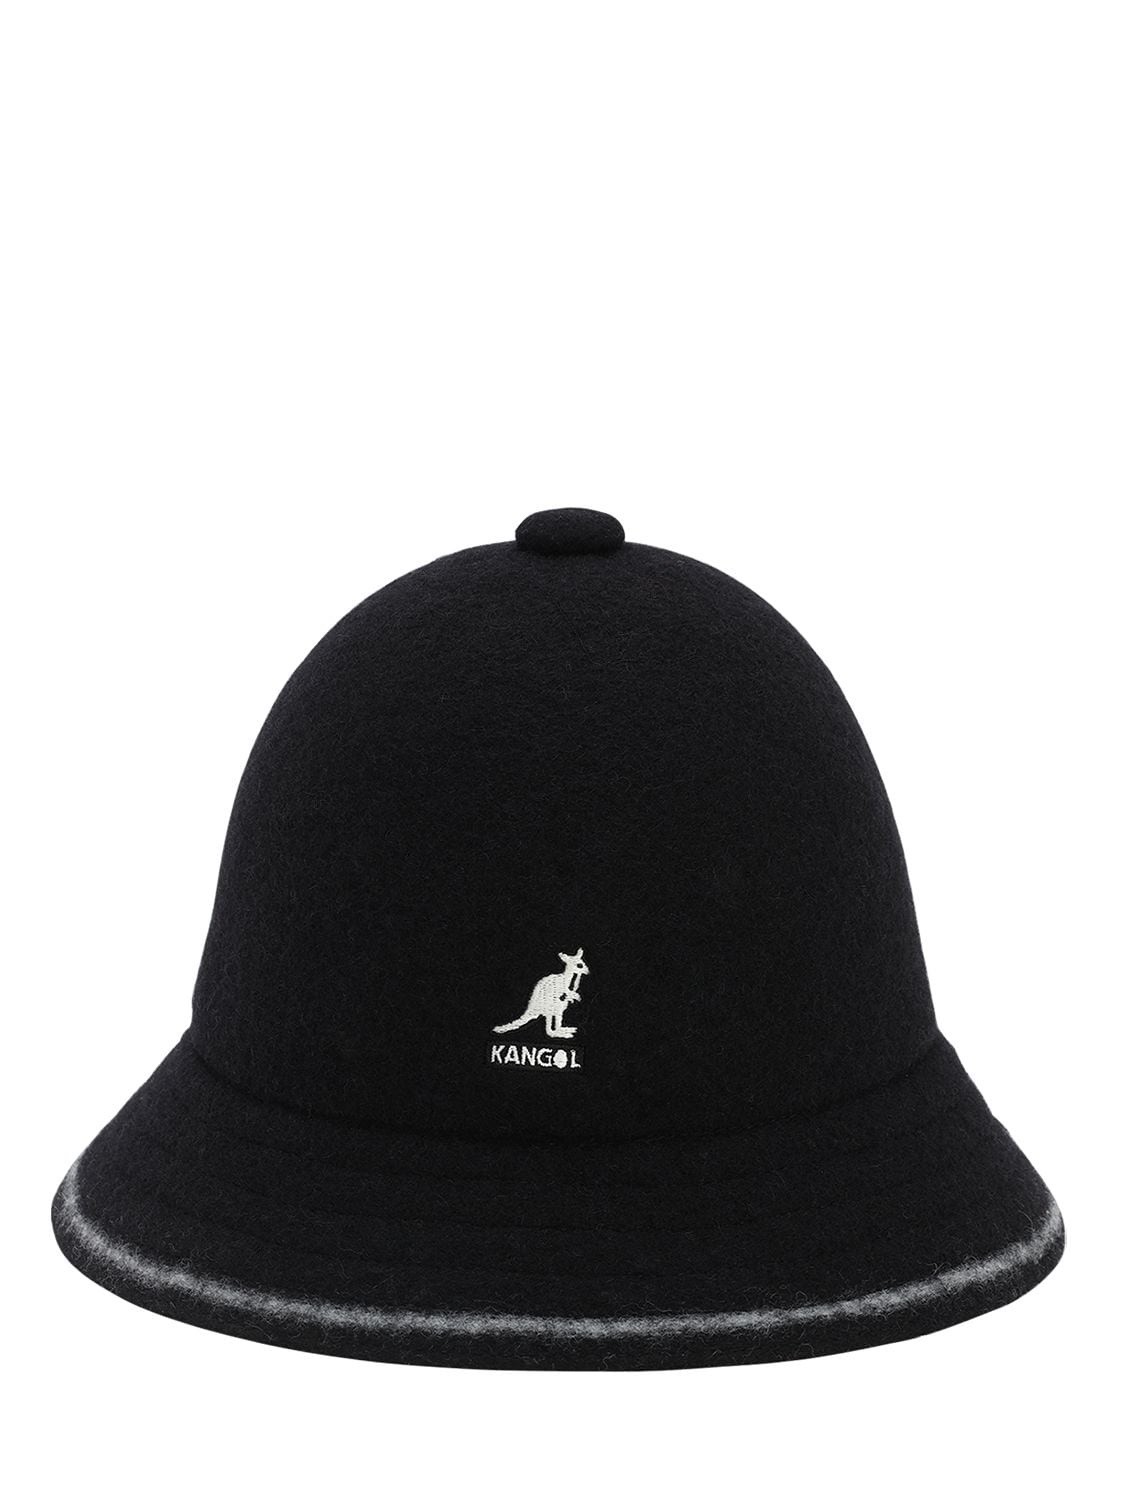 Kangol Wool Blend Bucket Hat In Black